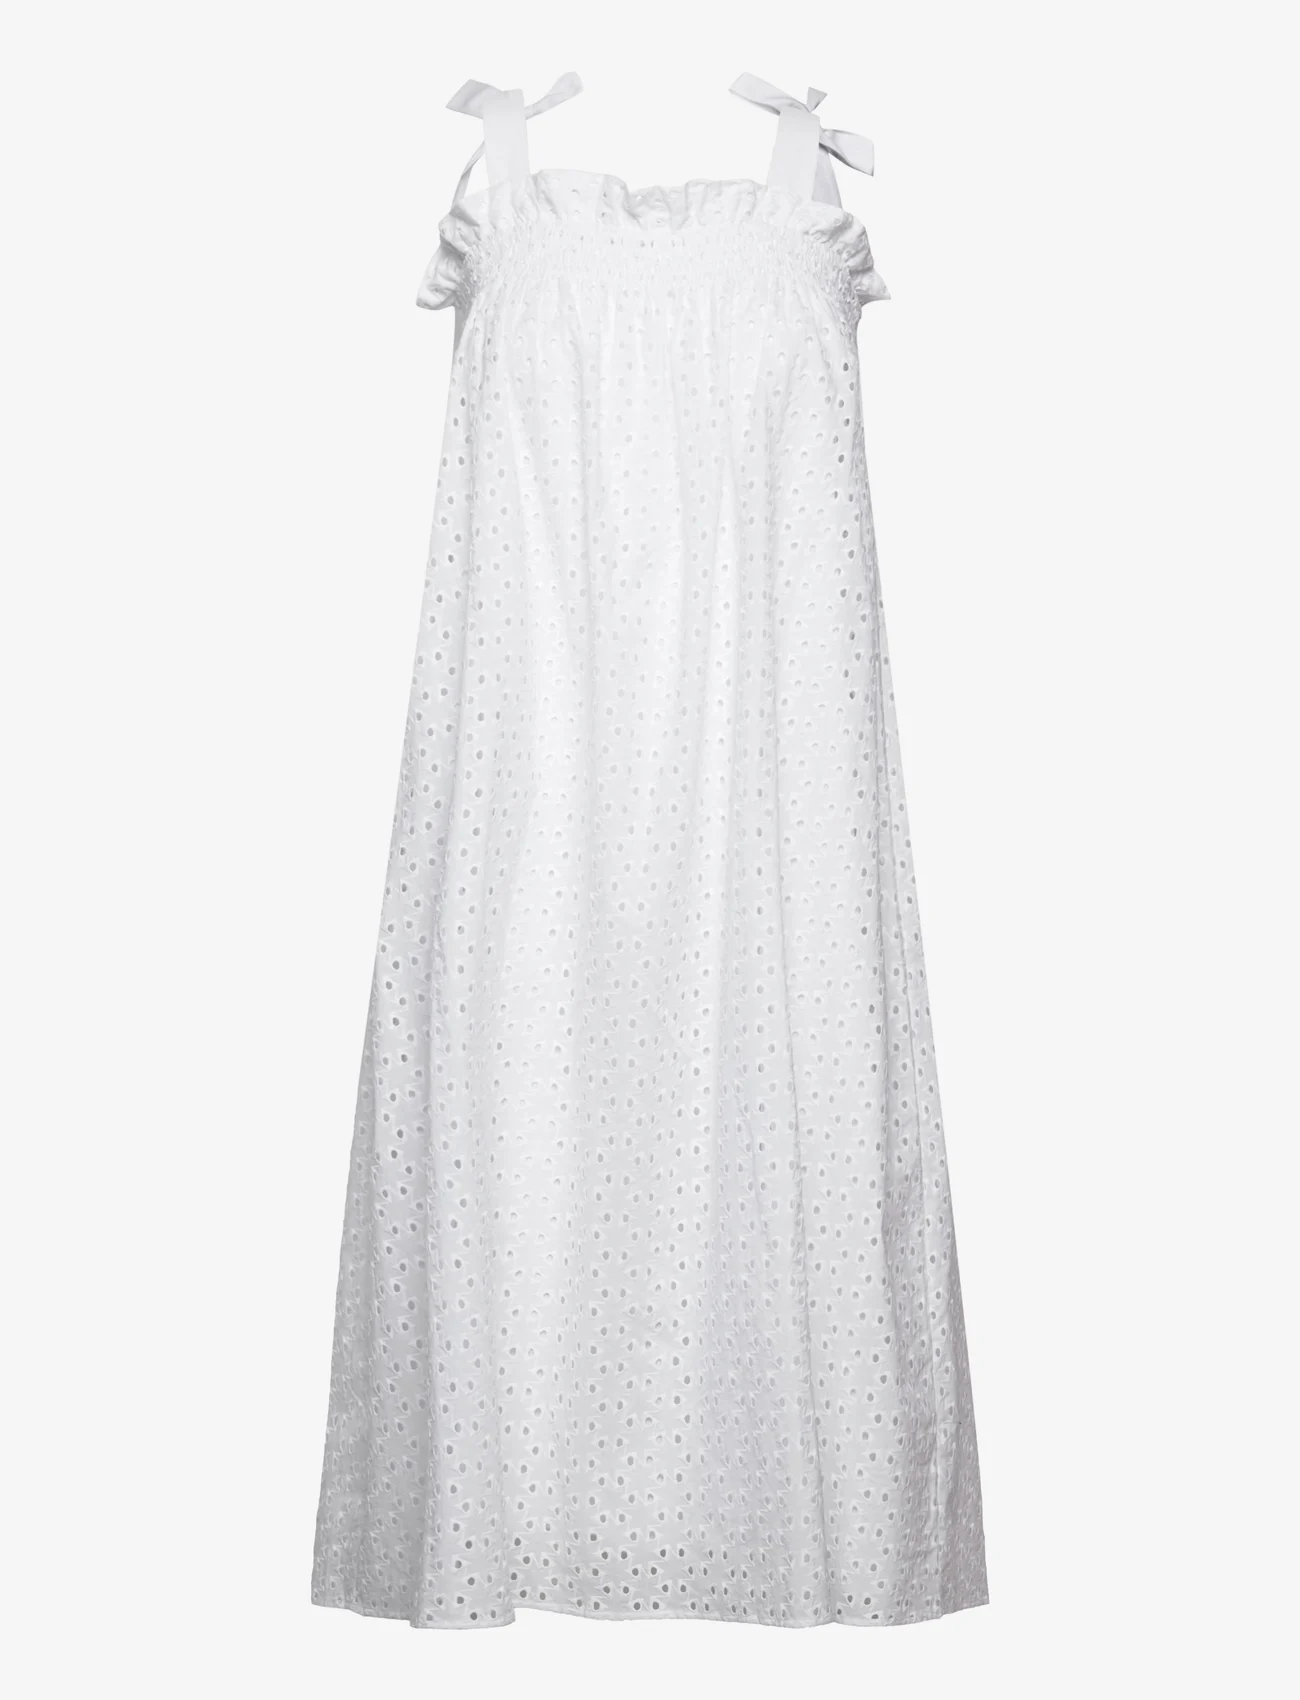 Bruuns Bazaar - Clianta Christine dress - spitzenkleider - white - 0